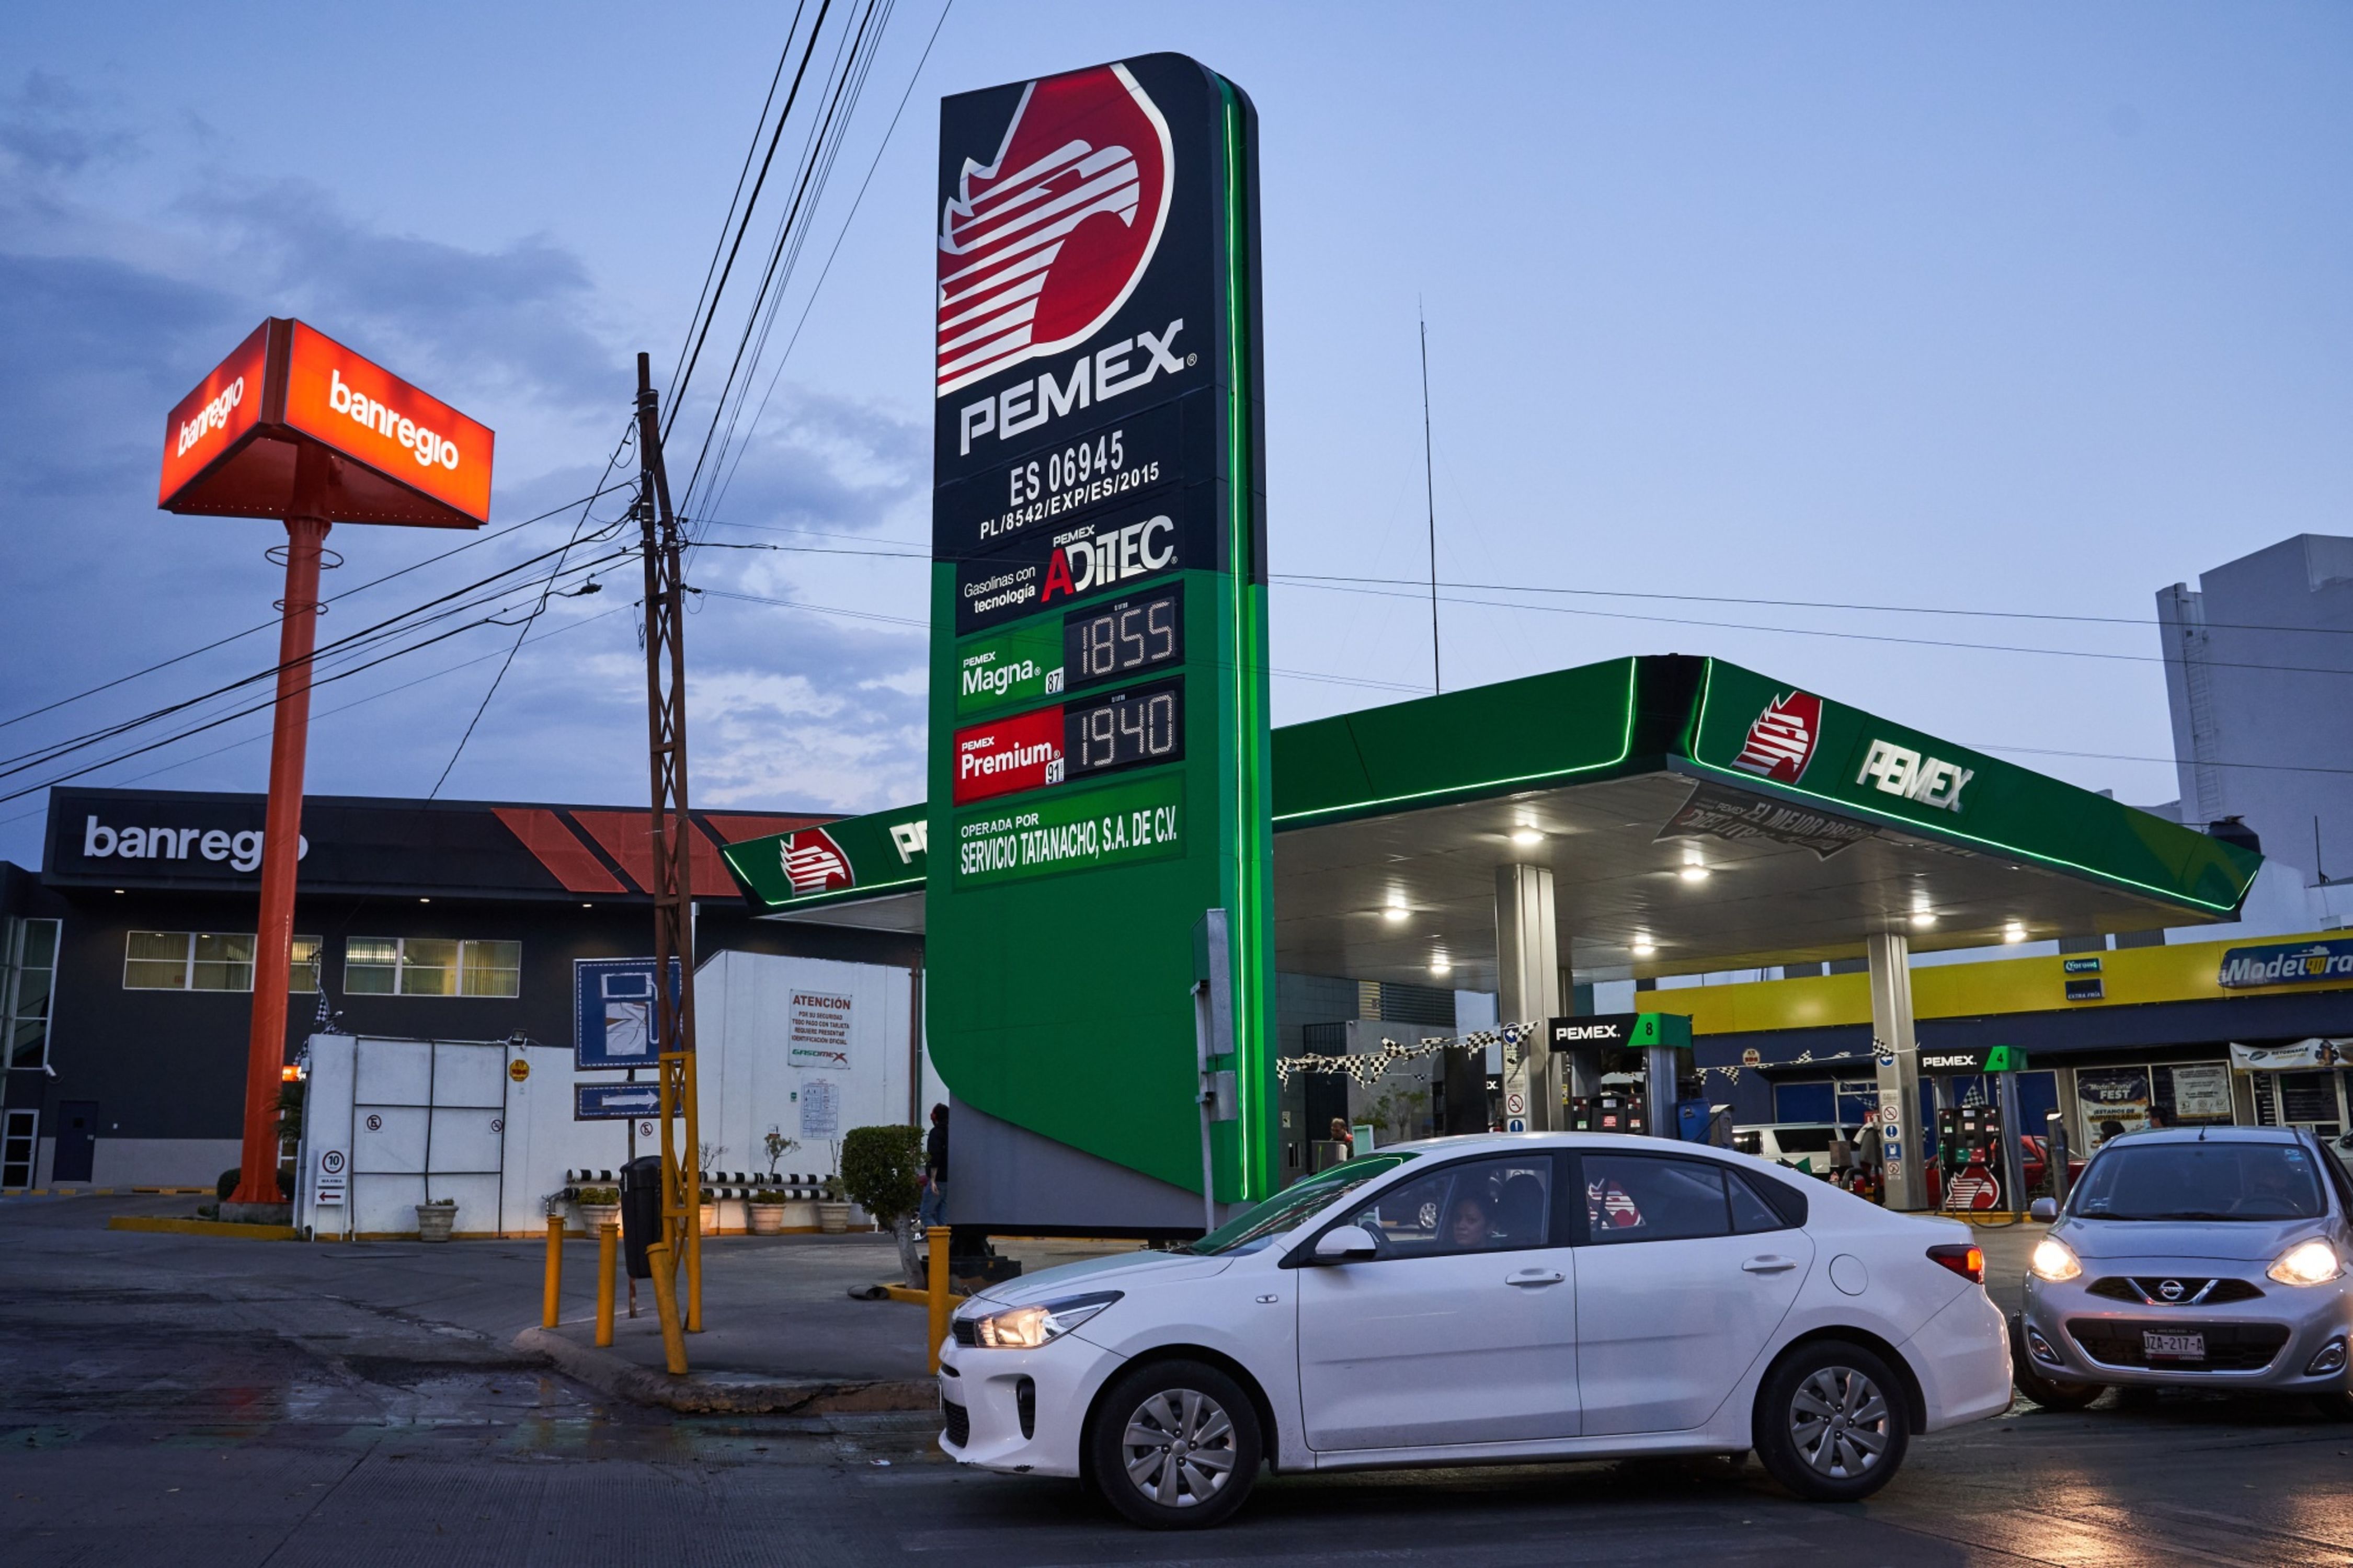 La marca Pemex se hunde entre las gasolineras de México